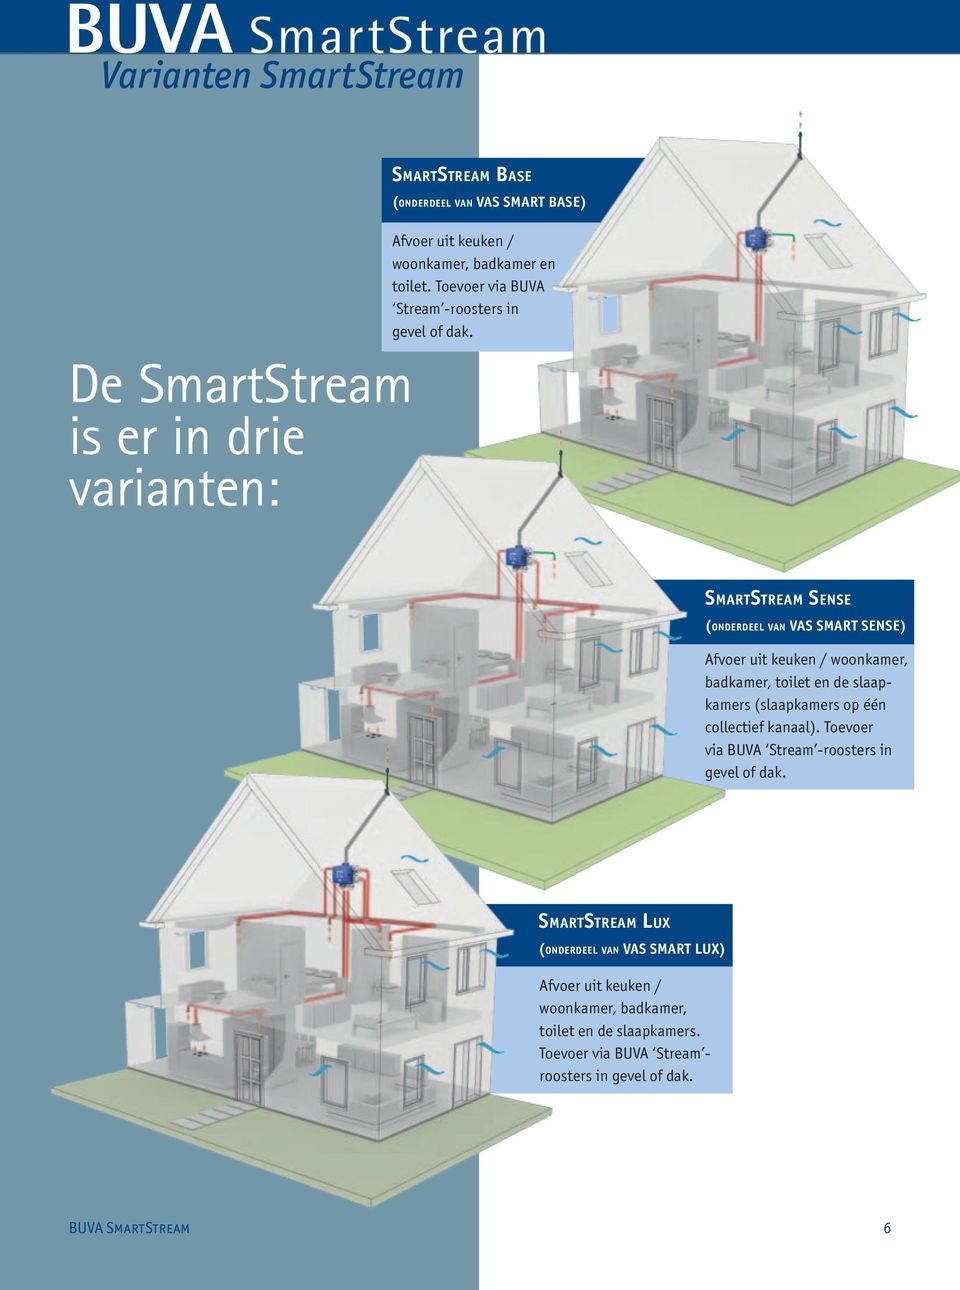 SmartStream Sense (onderdeel van VAS SMART SENSE) Afvoer uit keuken / woonkamer, badkamer, toilet en de slaapkamers (slaapkamers op één collectief kanaal).